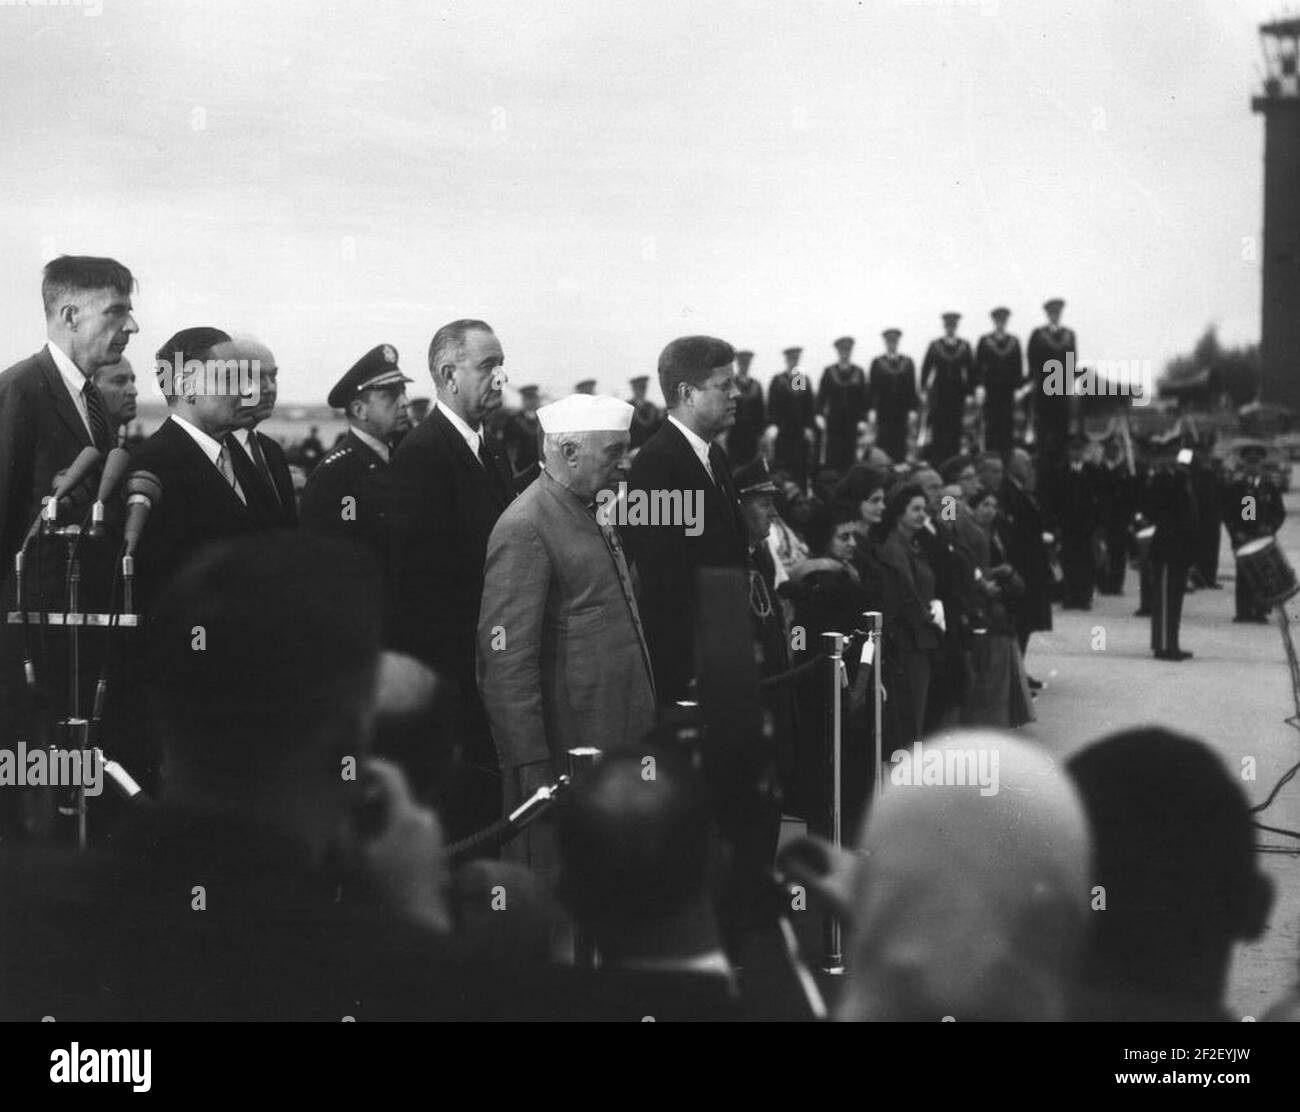 Präsident John F. Kennedy, Premierminister von Indien Jawaharlal Nehru und andere während der Ankunftszeremonien. Stockfoto